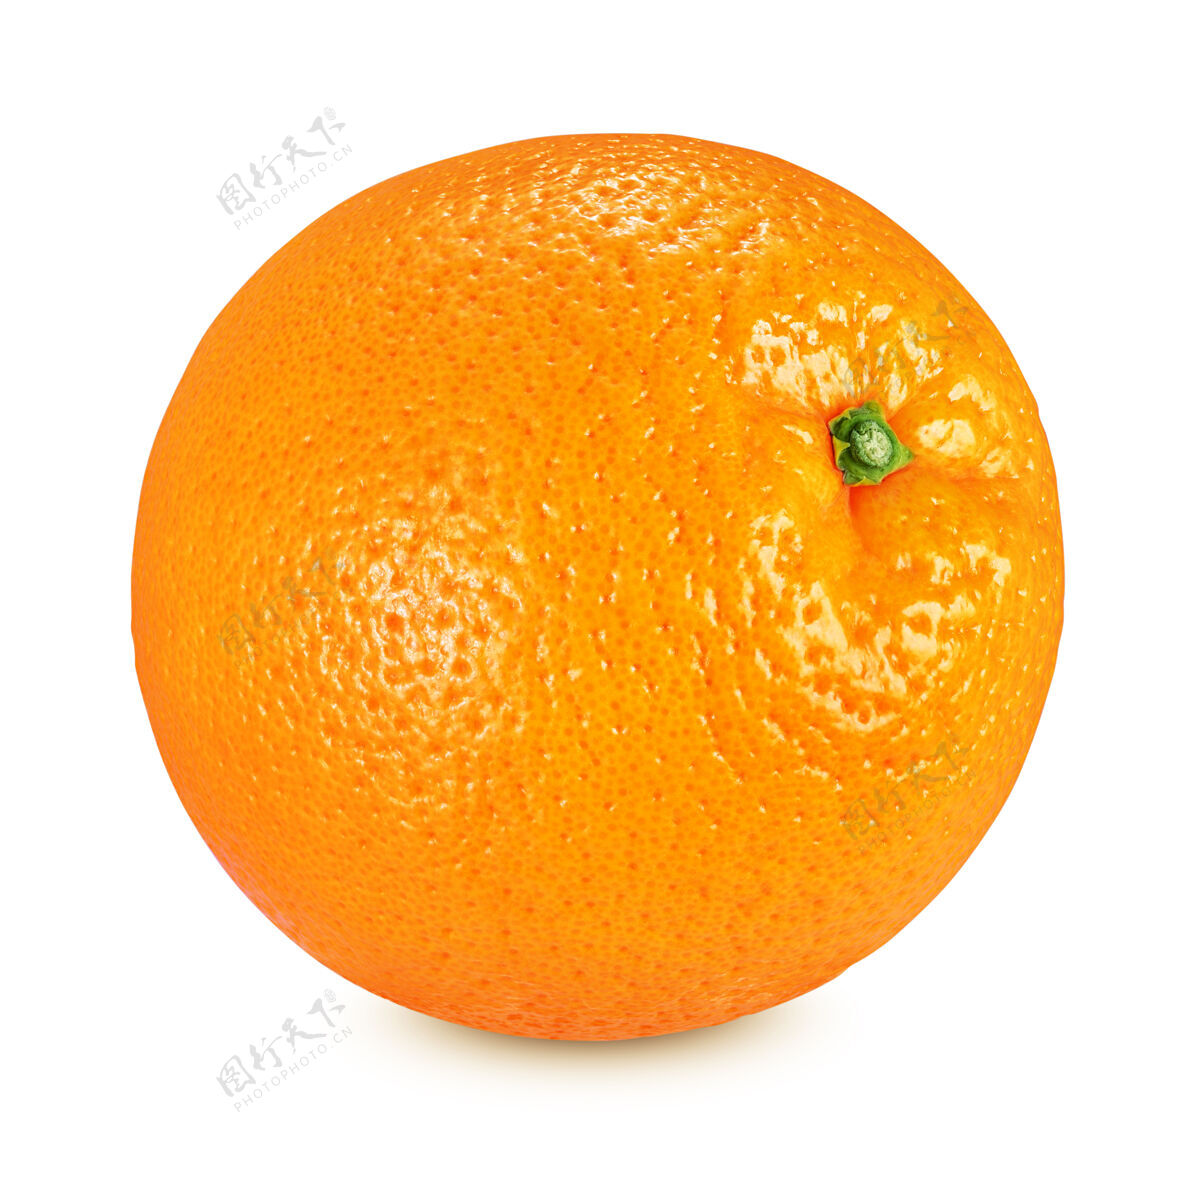 黄色整个成熟的橙色水果隔离在白色背景与剪辑路径新鲜白色健康